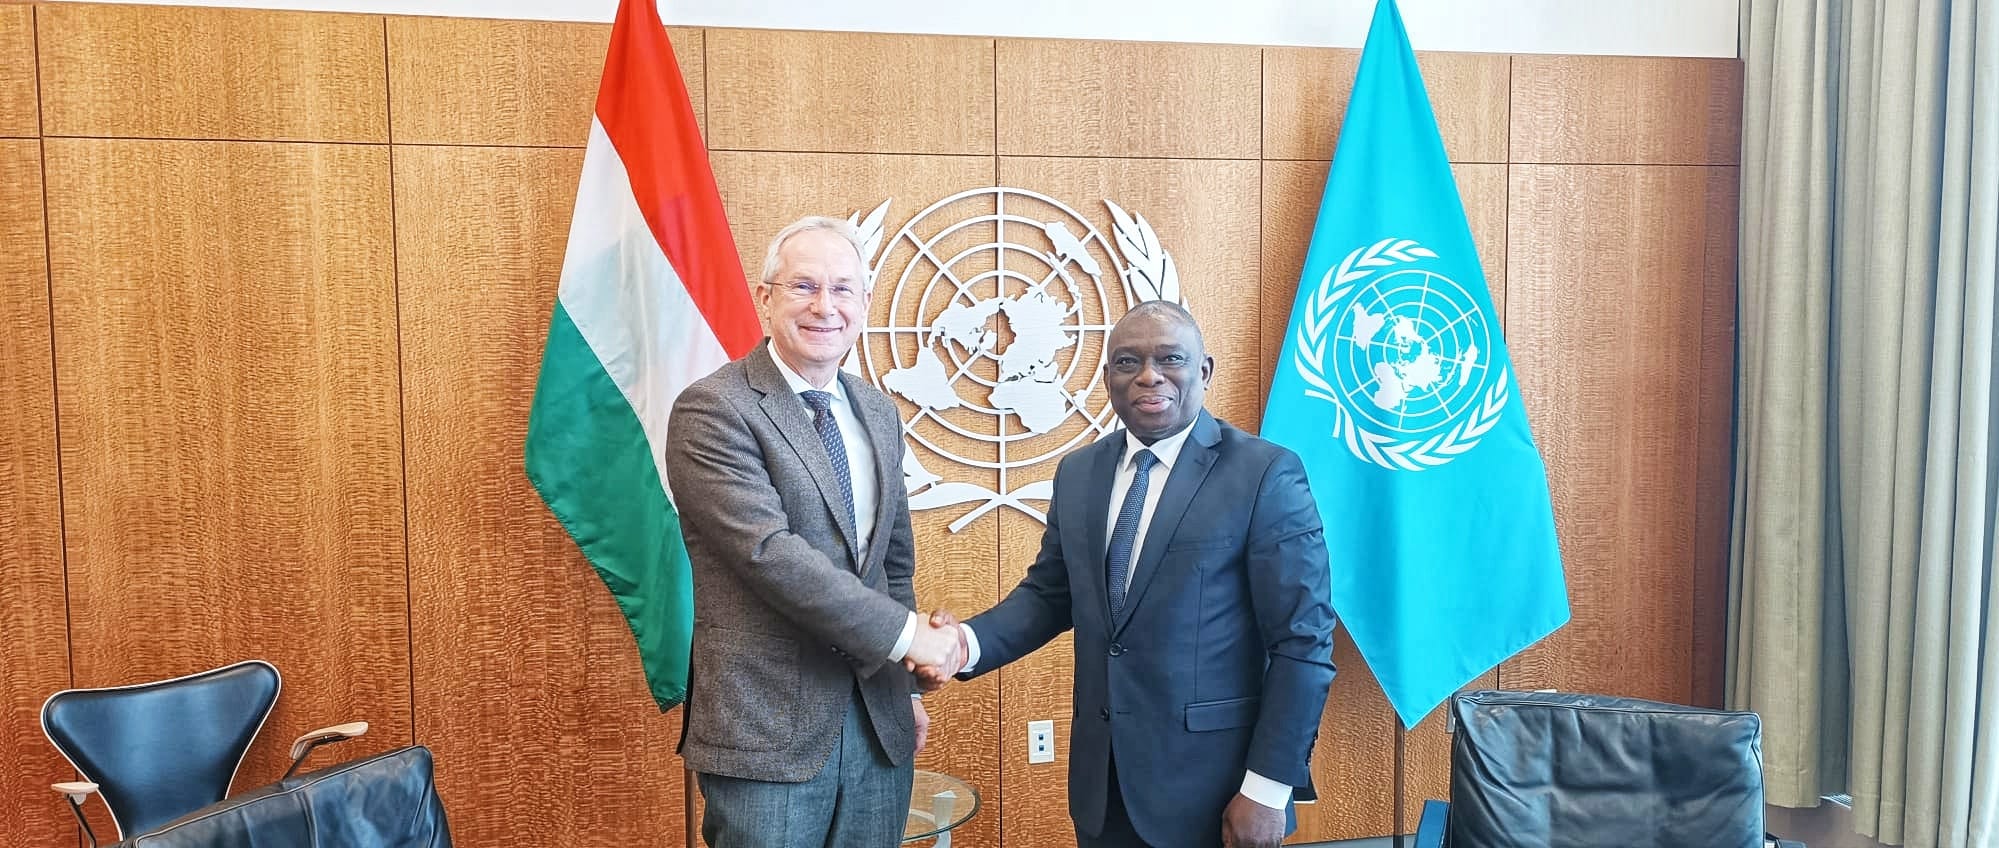 Siège de l’ONU: Le Ministre KOUADIO Konan Bertin rencontre le Président de l’Assemblée Générale de l’ONU à New York.